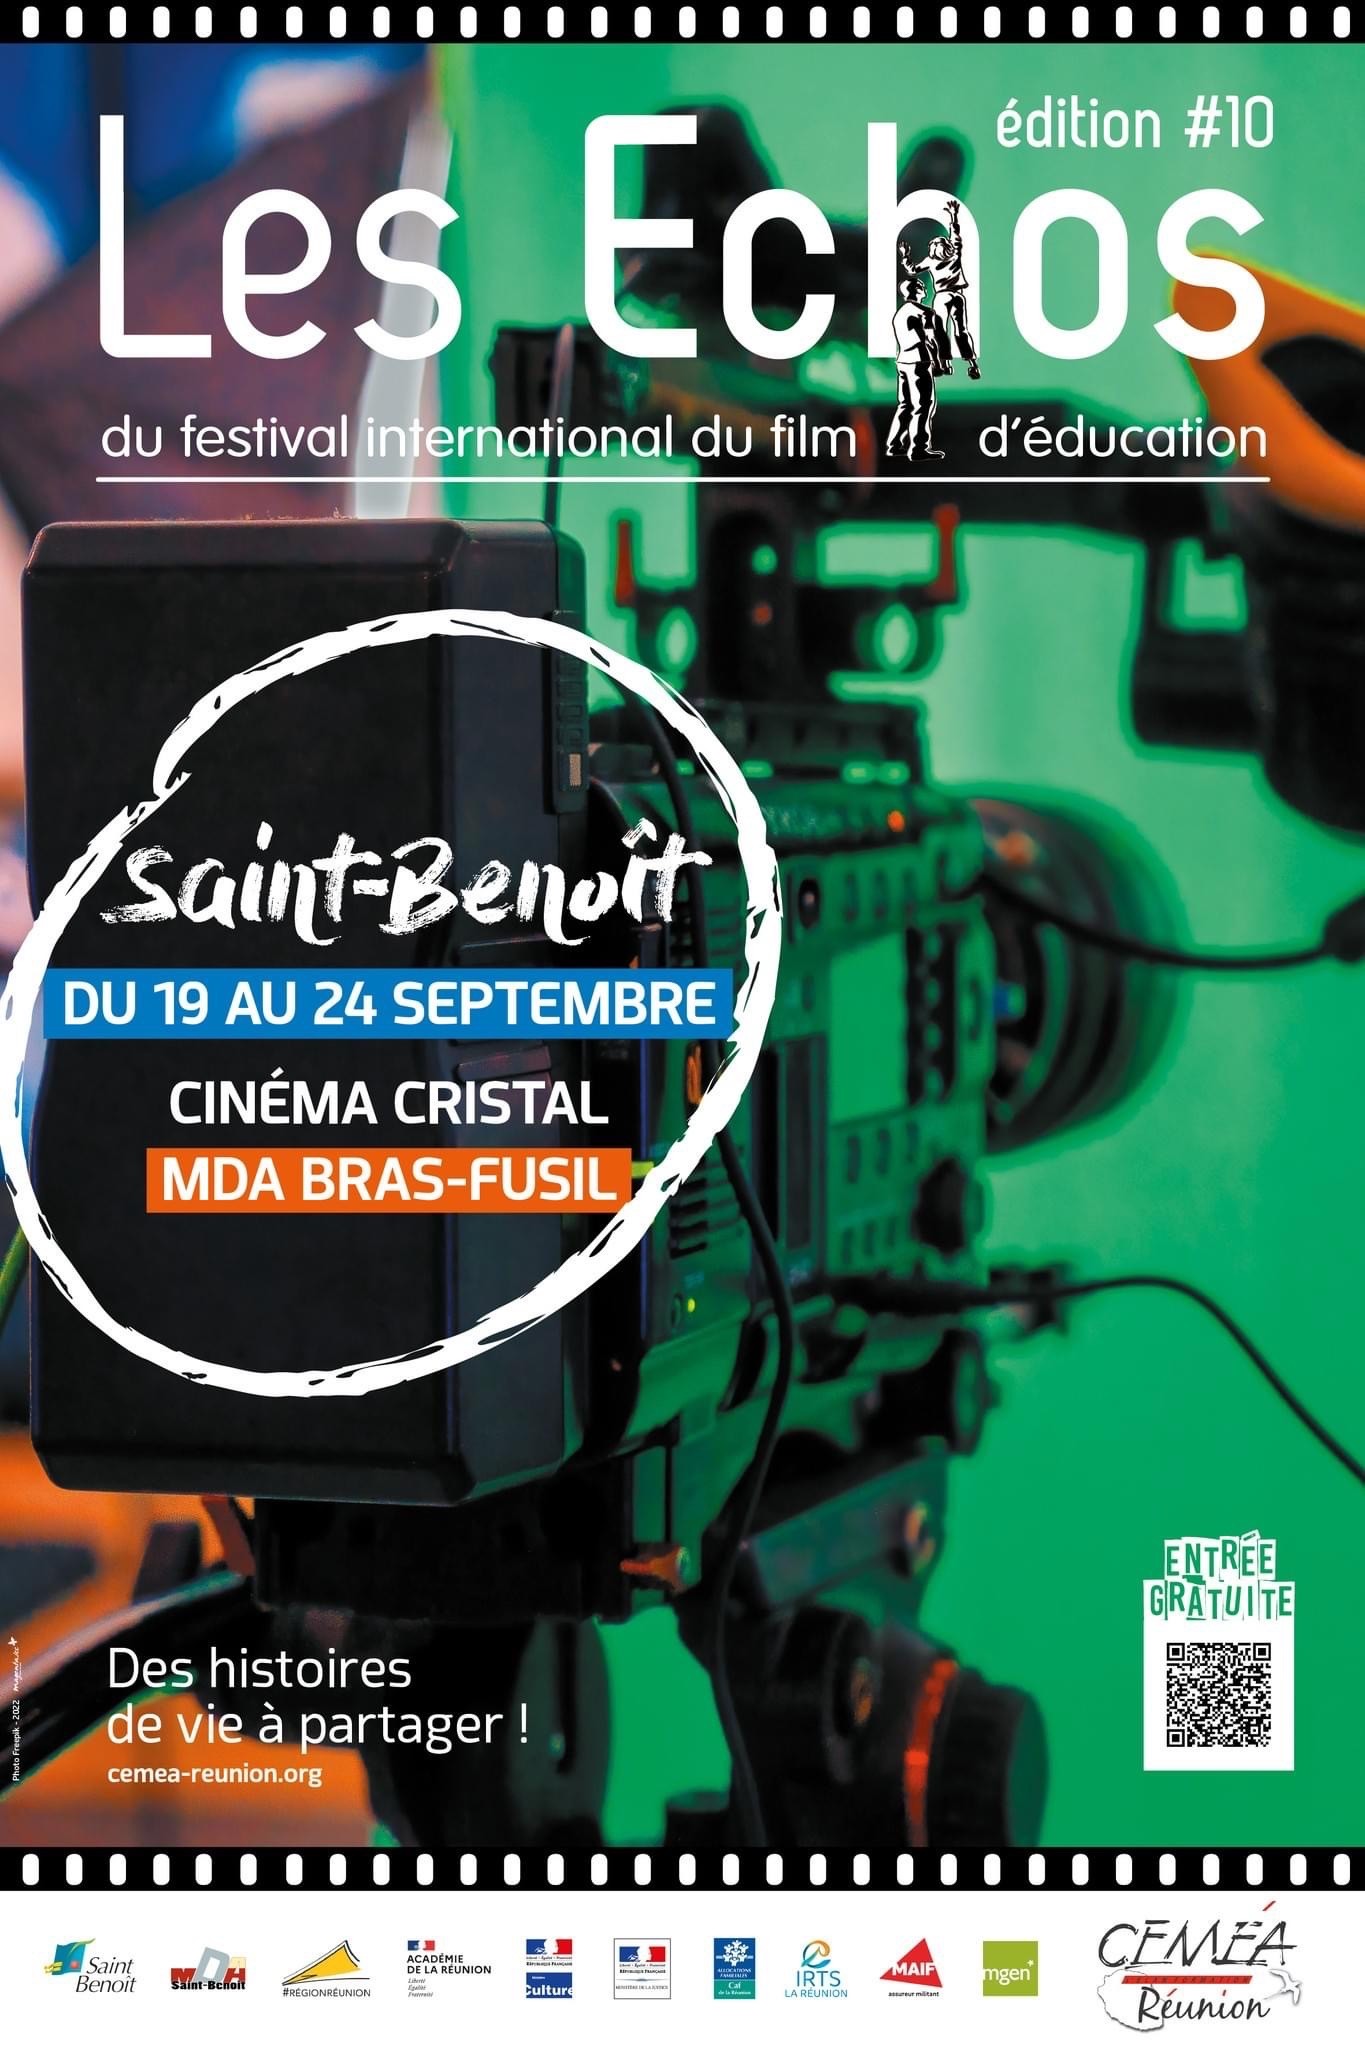 Les Échos du Festival du film de l’éducation de retour à St-Benoît !